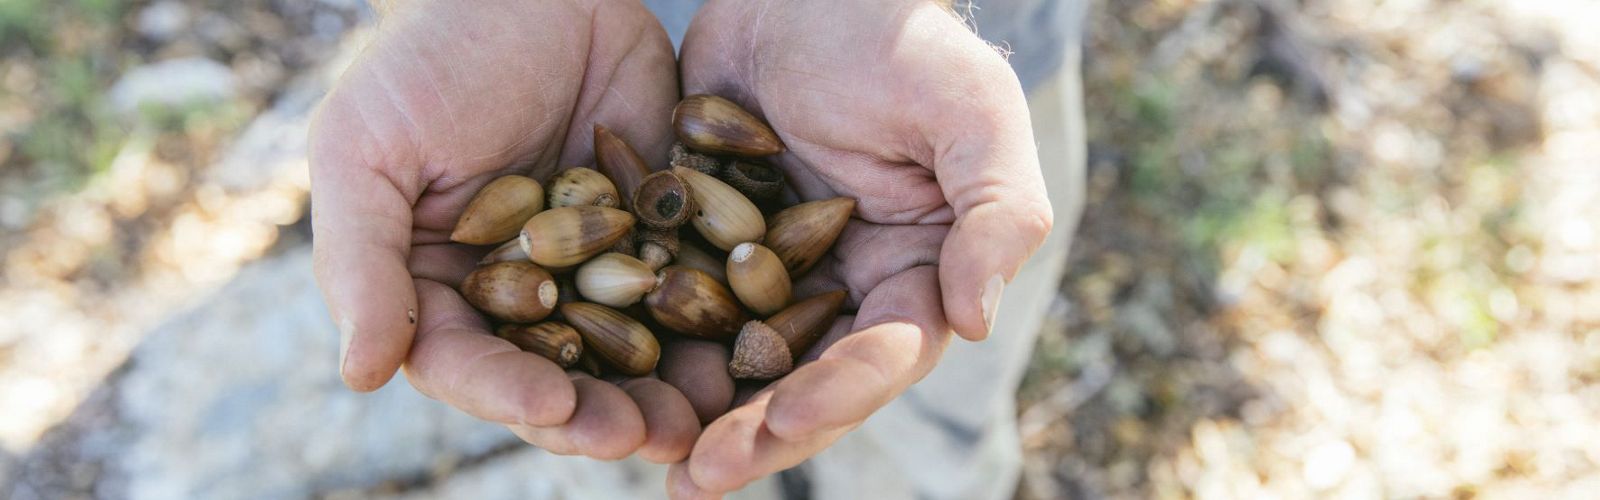 A handful of coast live oak acorns.